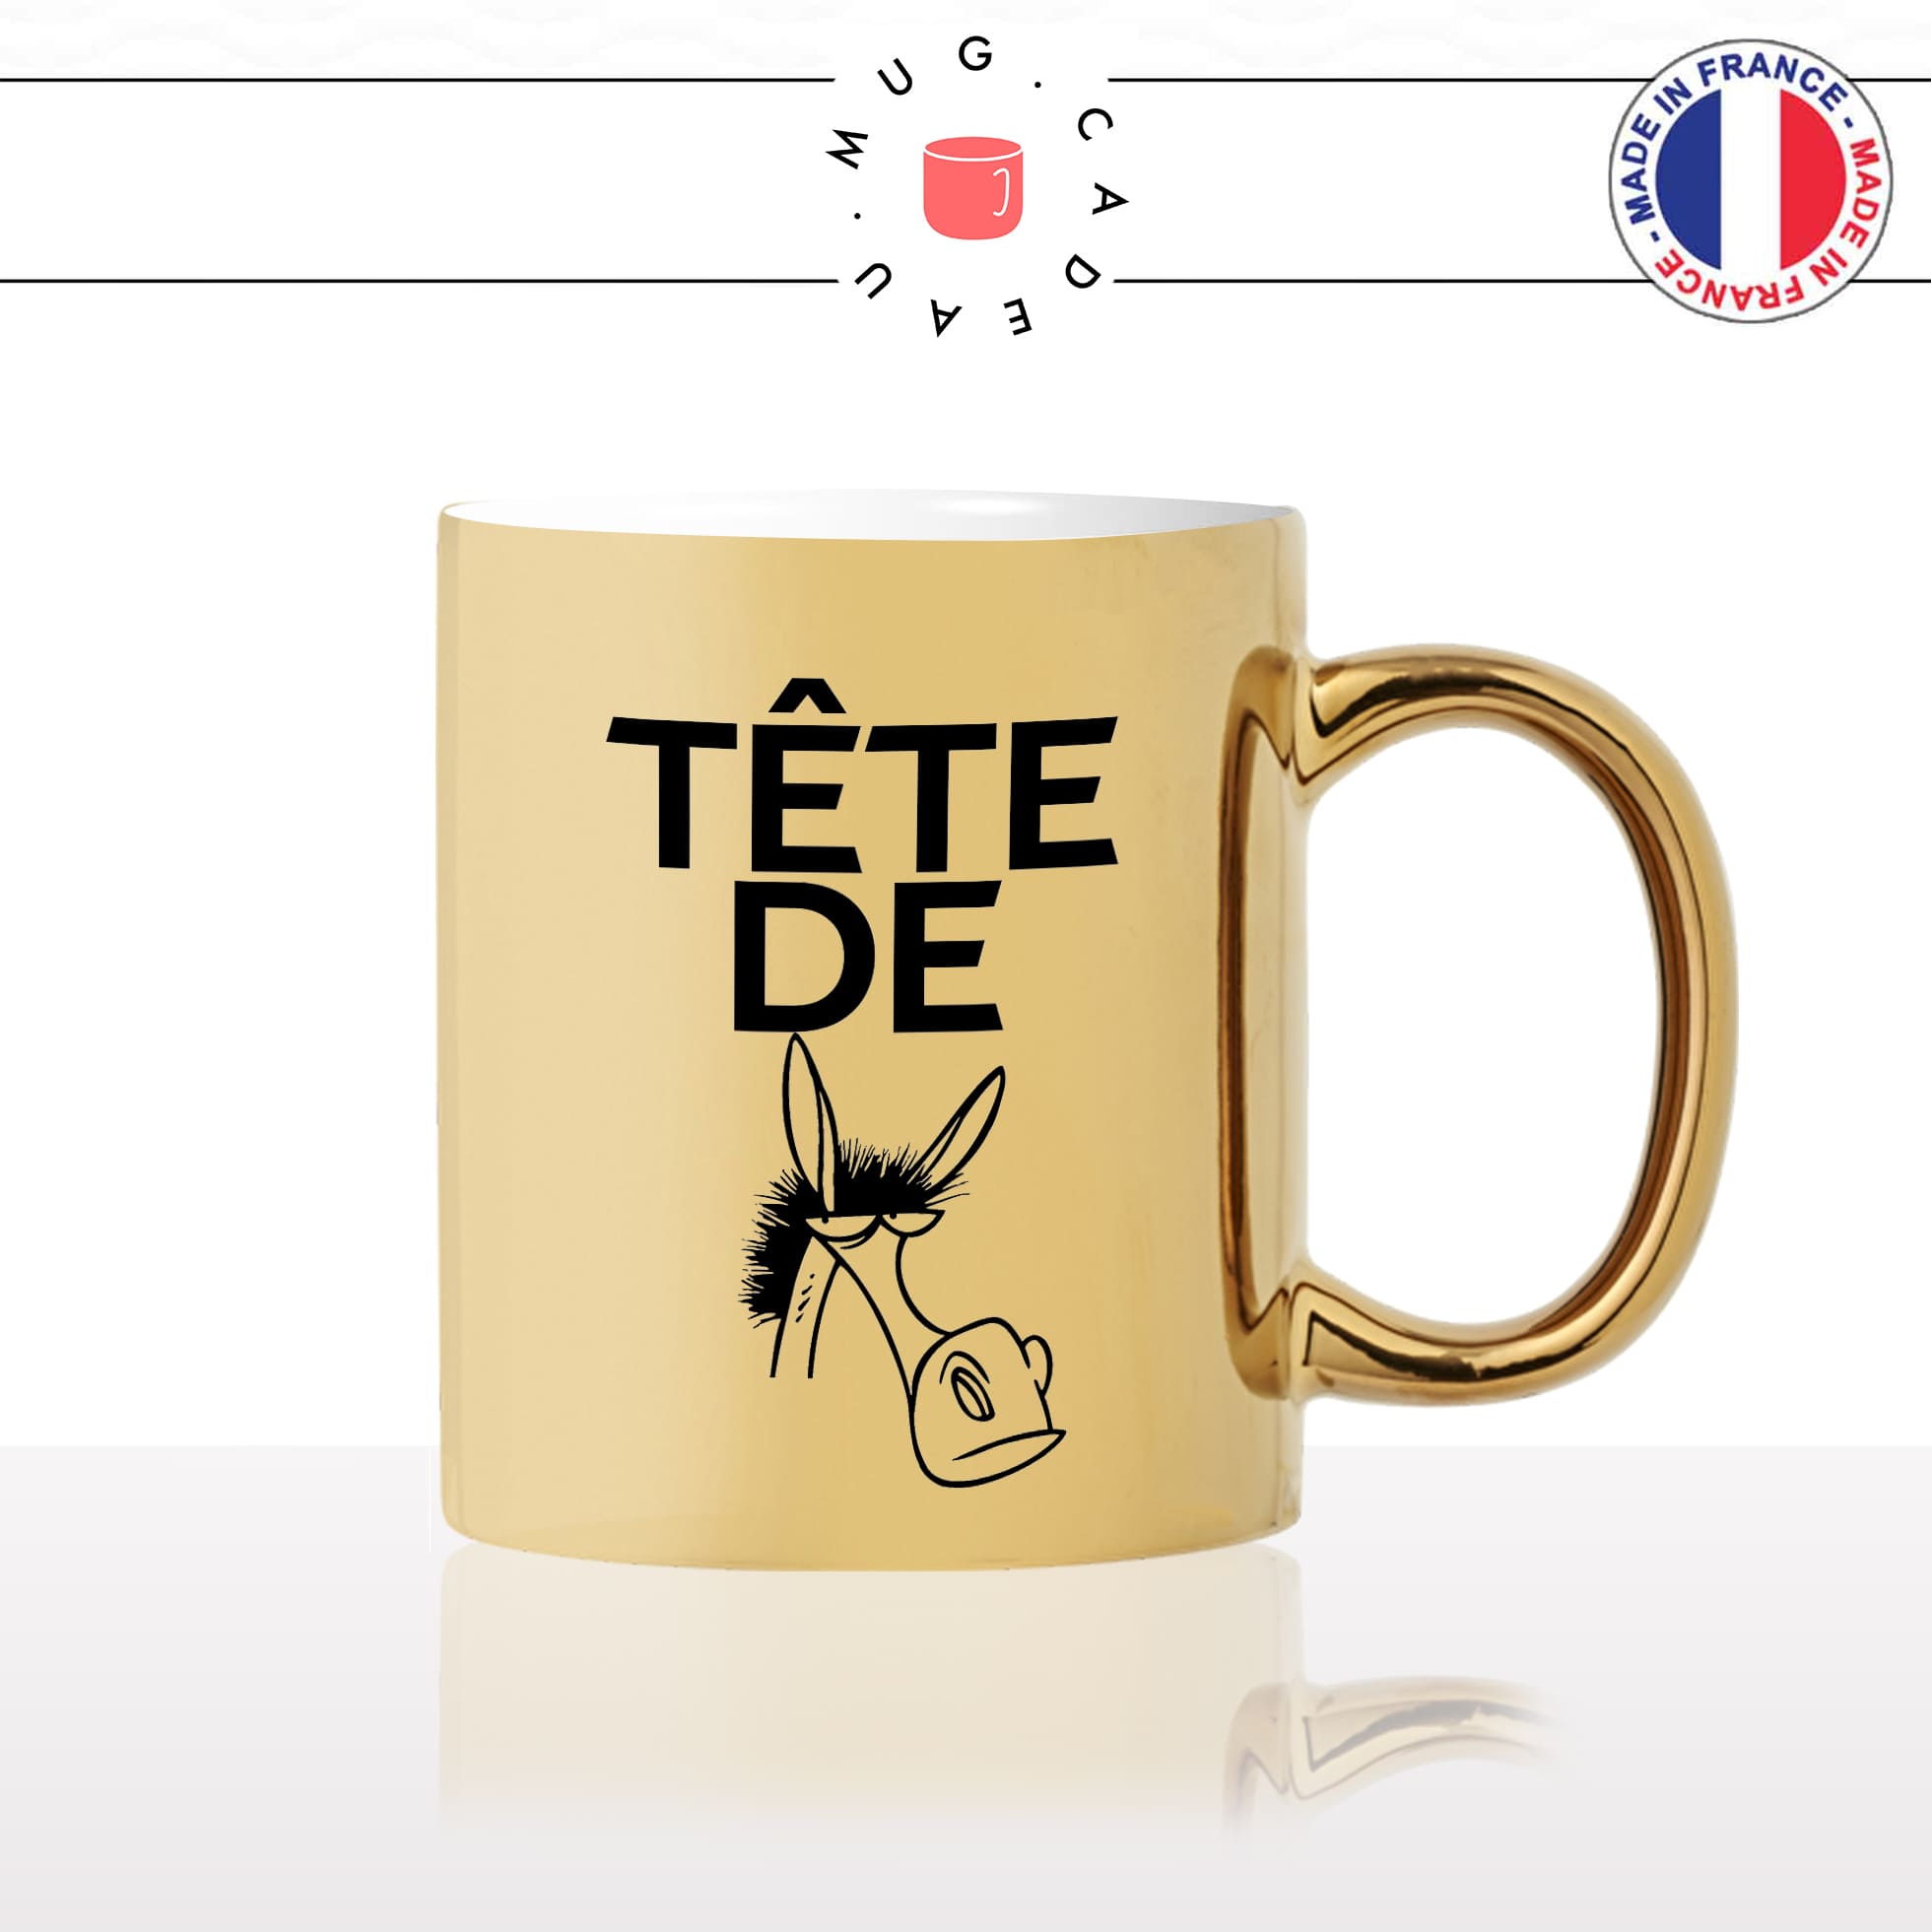 mug-tasse-or-doré-gold-tete-de-mule-drole-expression-francaise-borné-homme-femme-humour-fun-idée-cadeau-originale-cool2